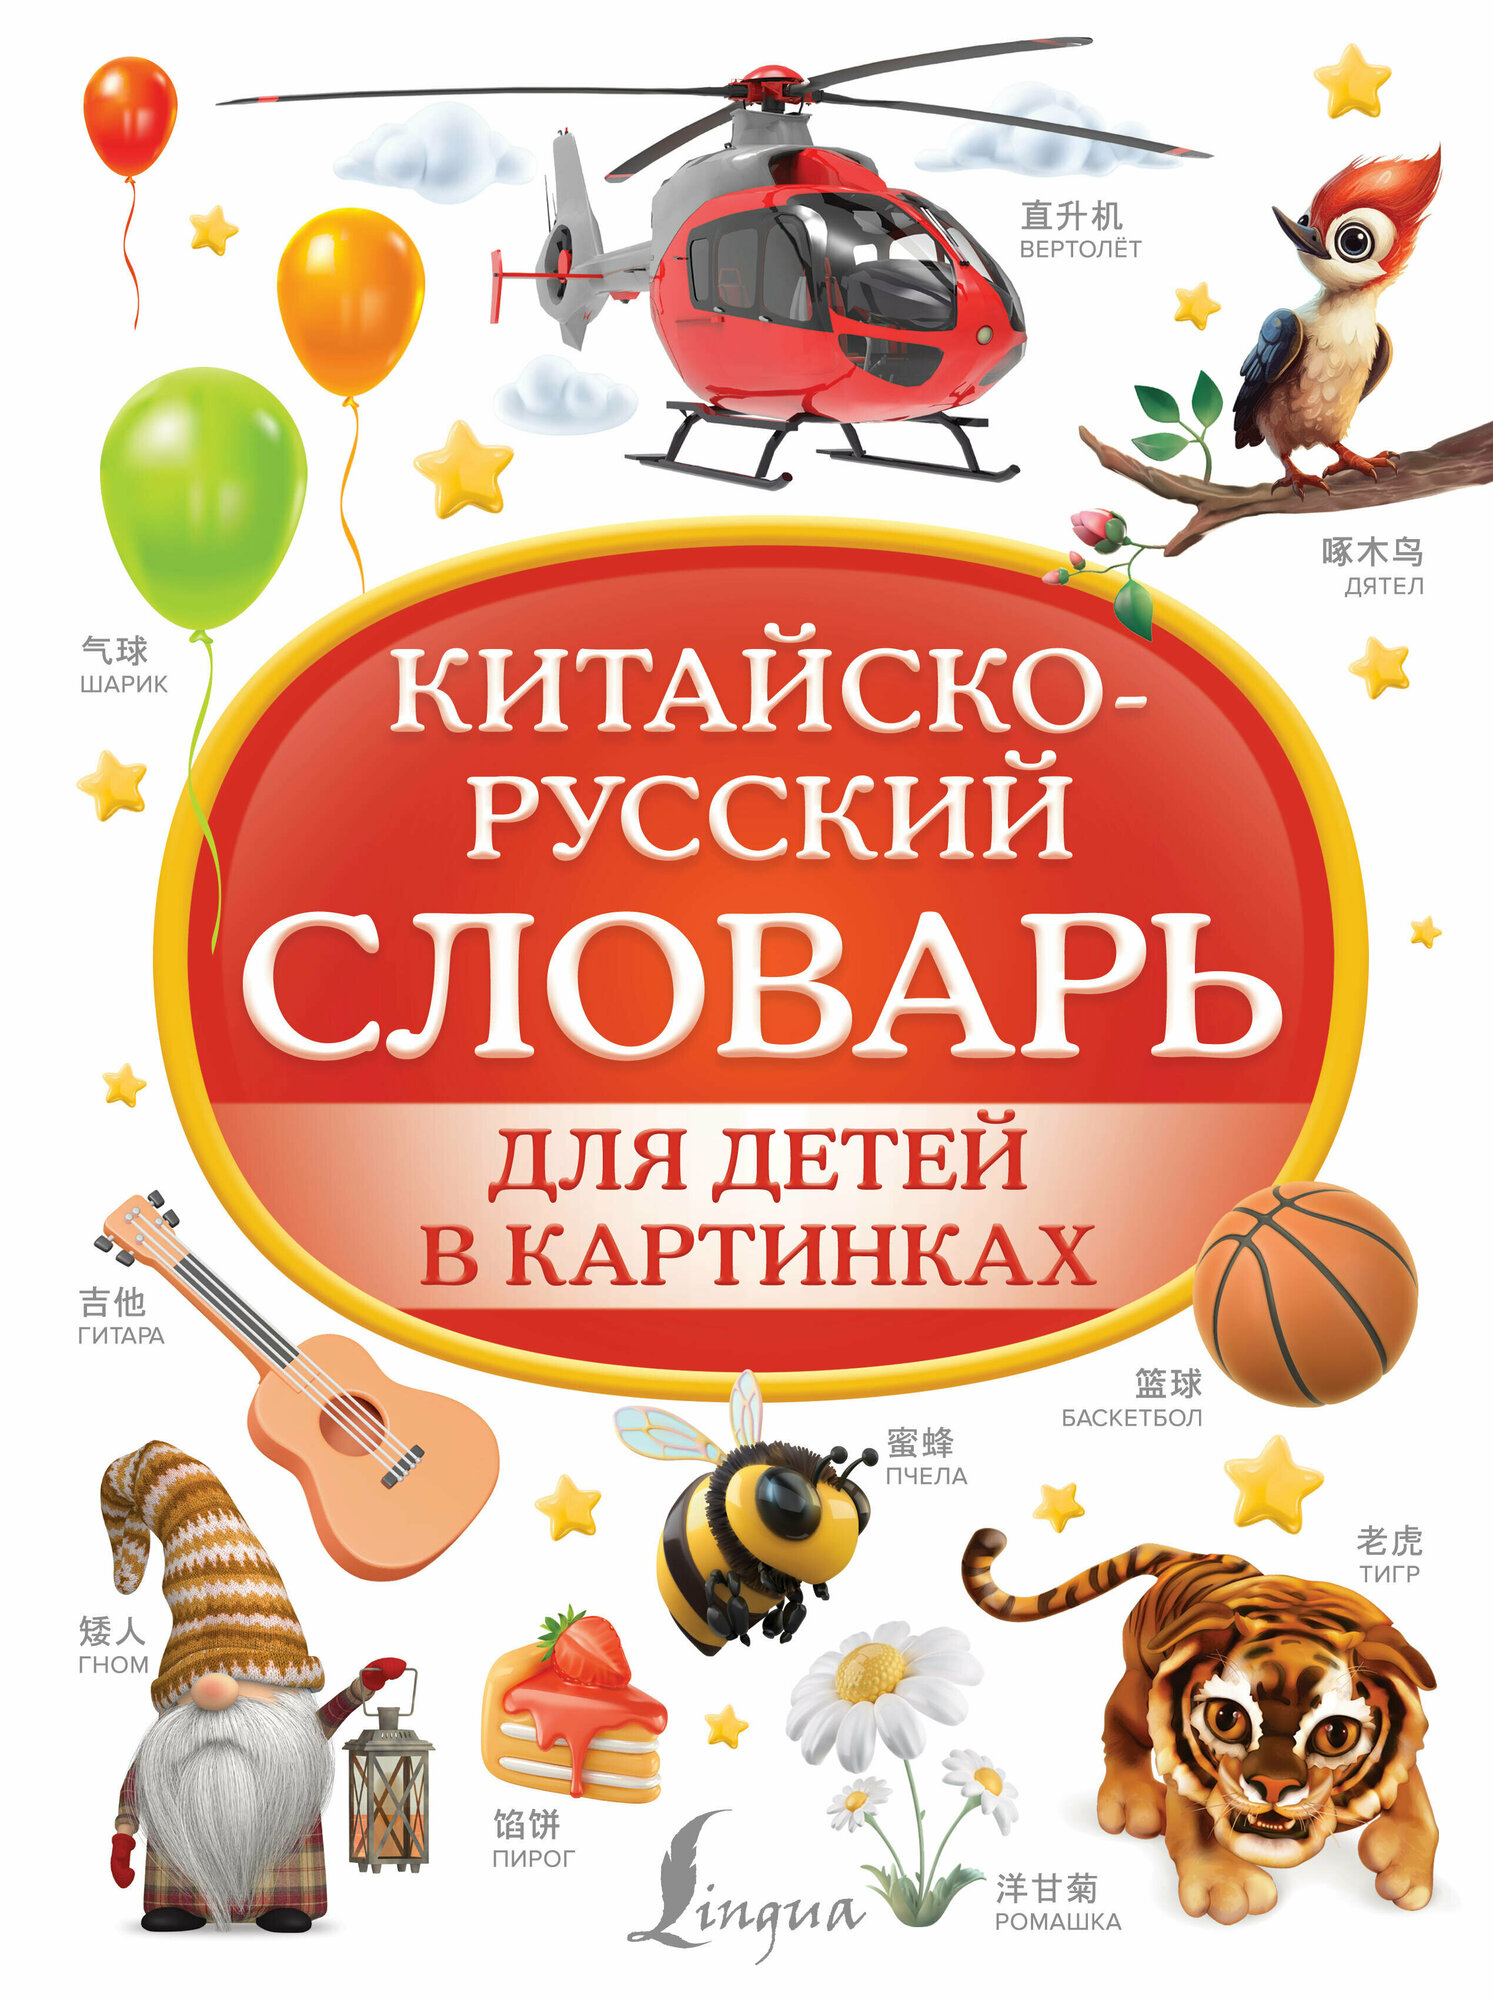 Китайско-русский словарь для детей в картинках - фото №1